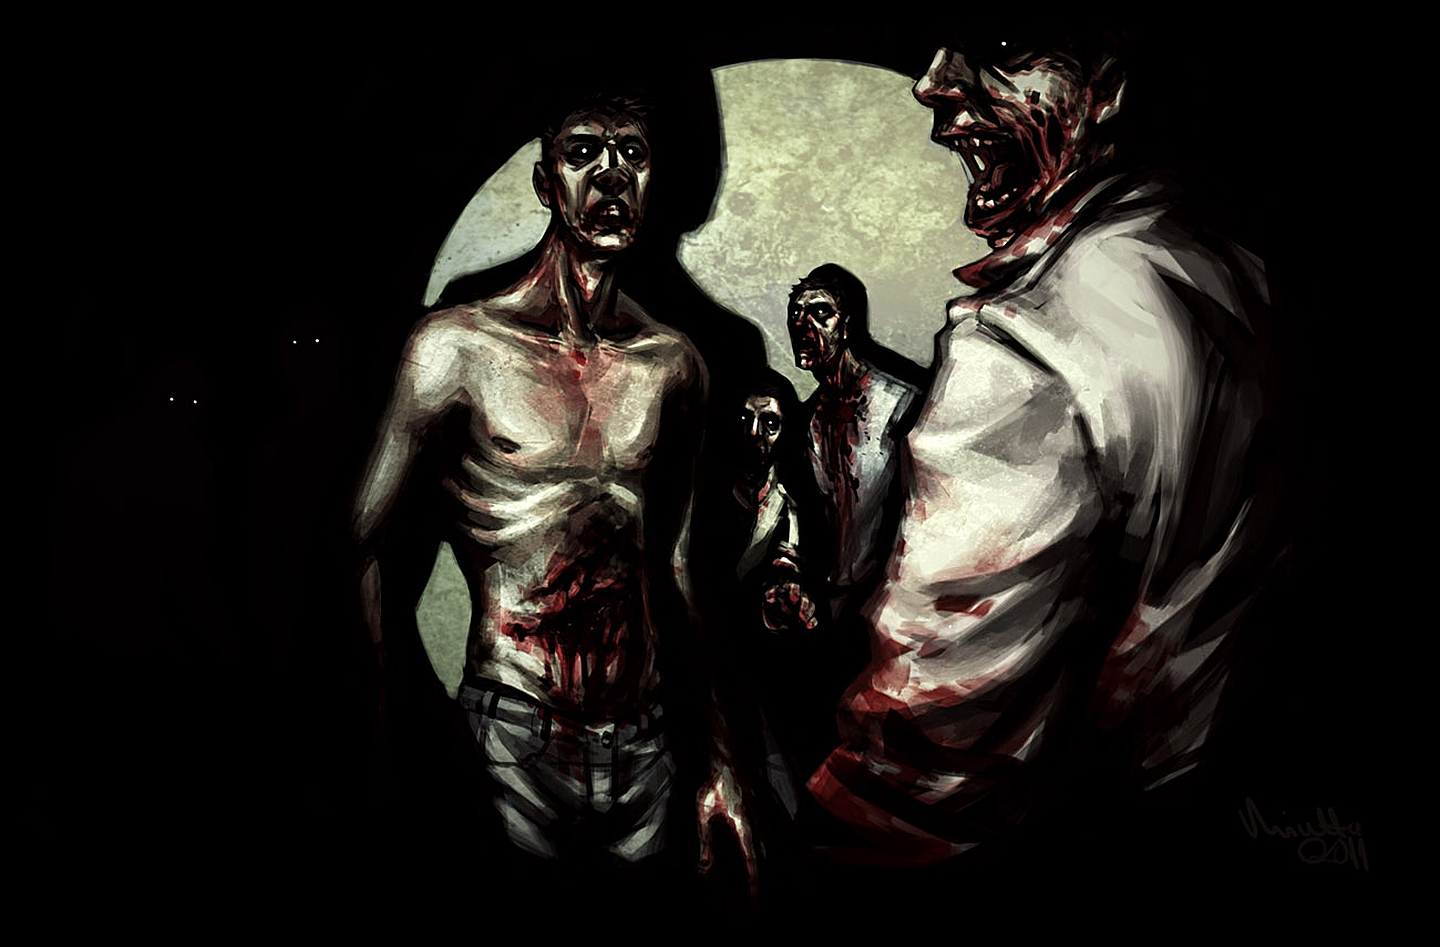 Free download wallpaper Dark, Zombie on your PC desktop